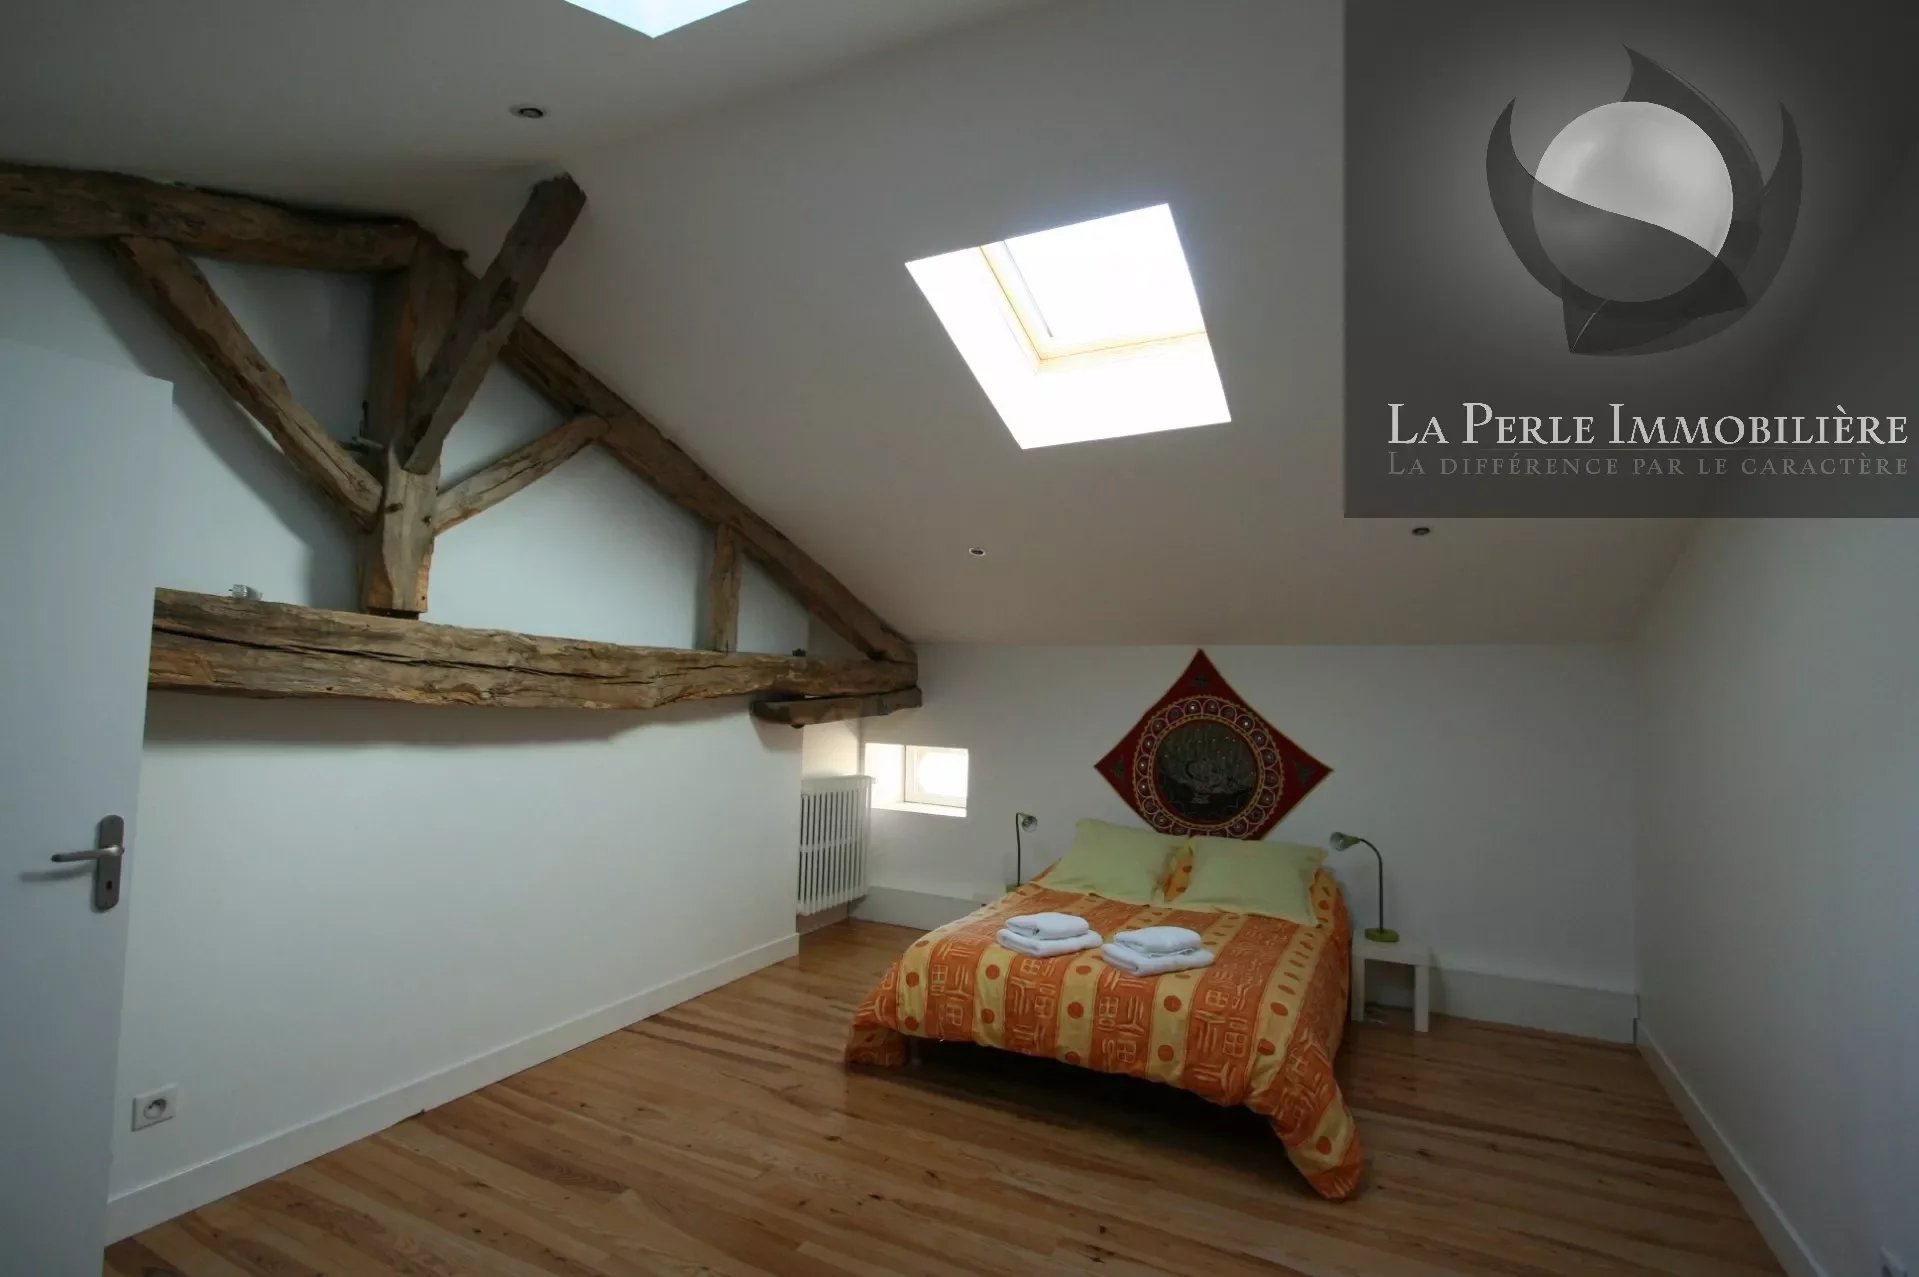 Bedroom Wooden floor Skylight